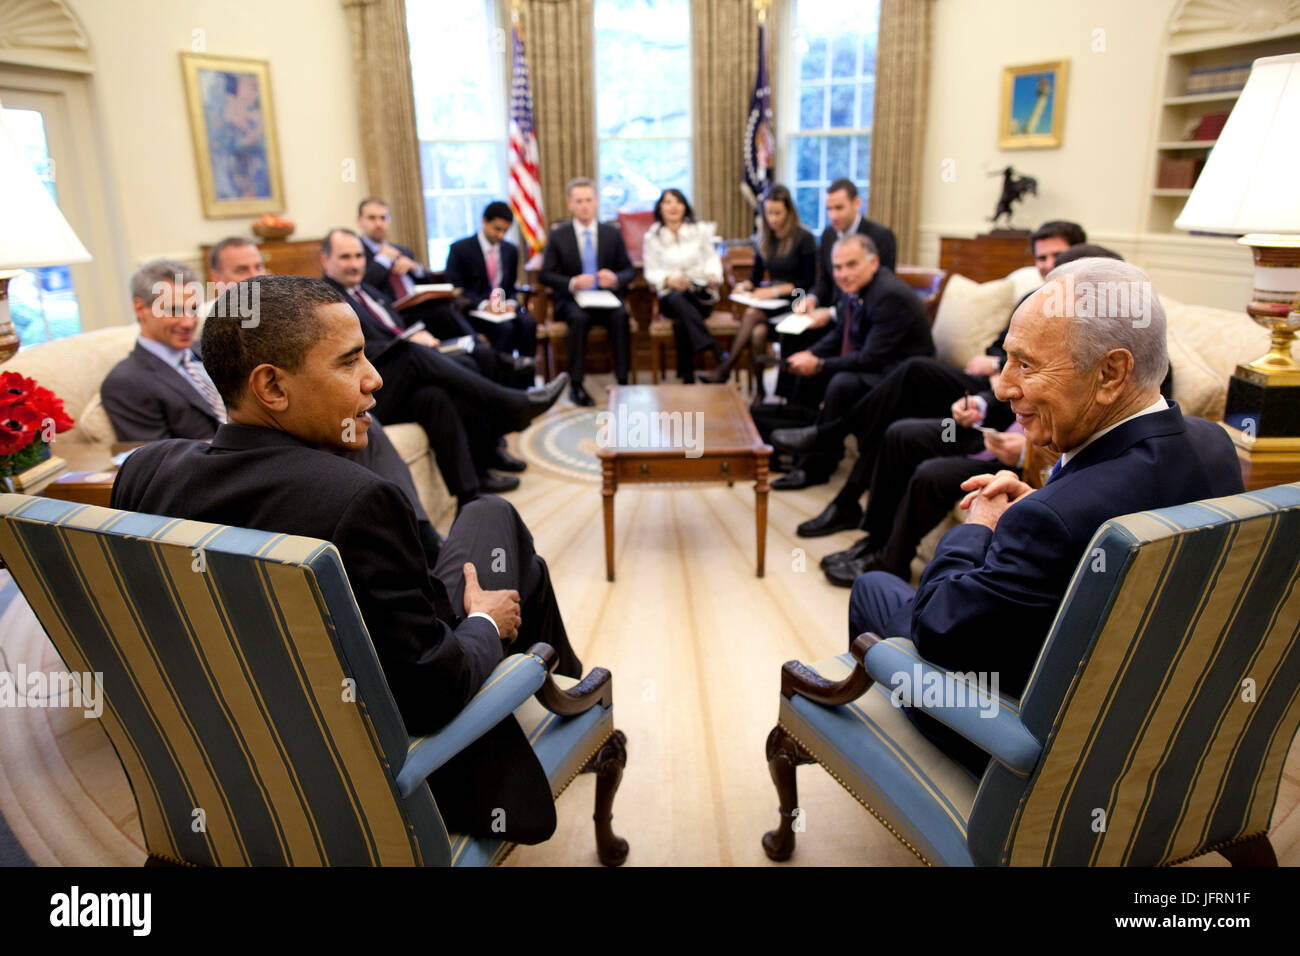 Präsident Barack Obama trifft sich mit israelischen Präsidenten Shimon Peres im Oval Office Dienstag, 5. Mai 2009.   Offiziellen White House Photo by Pete Souza Stockfoto